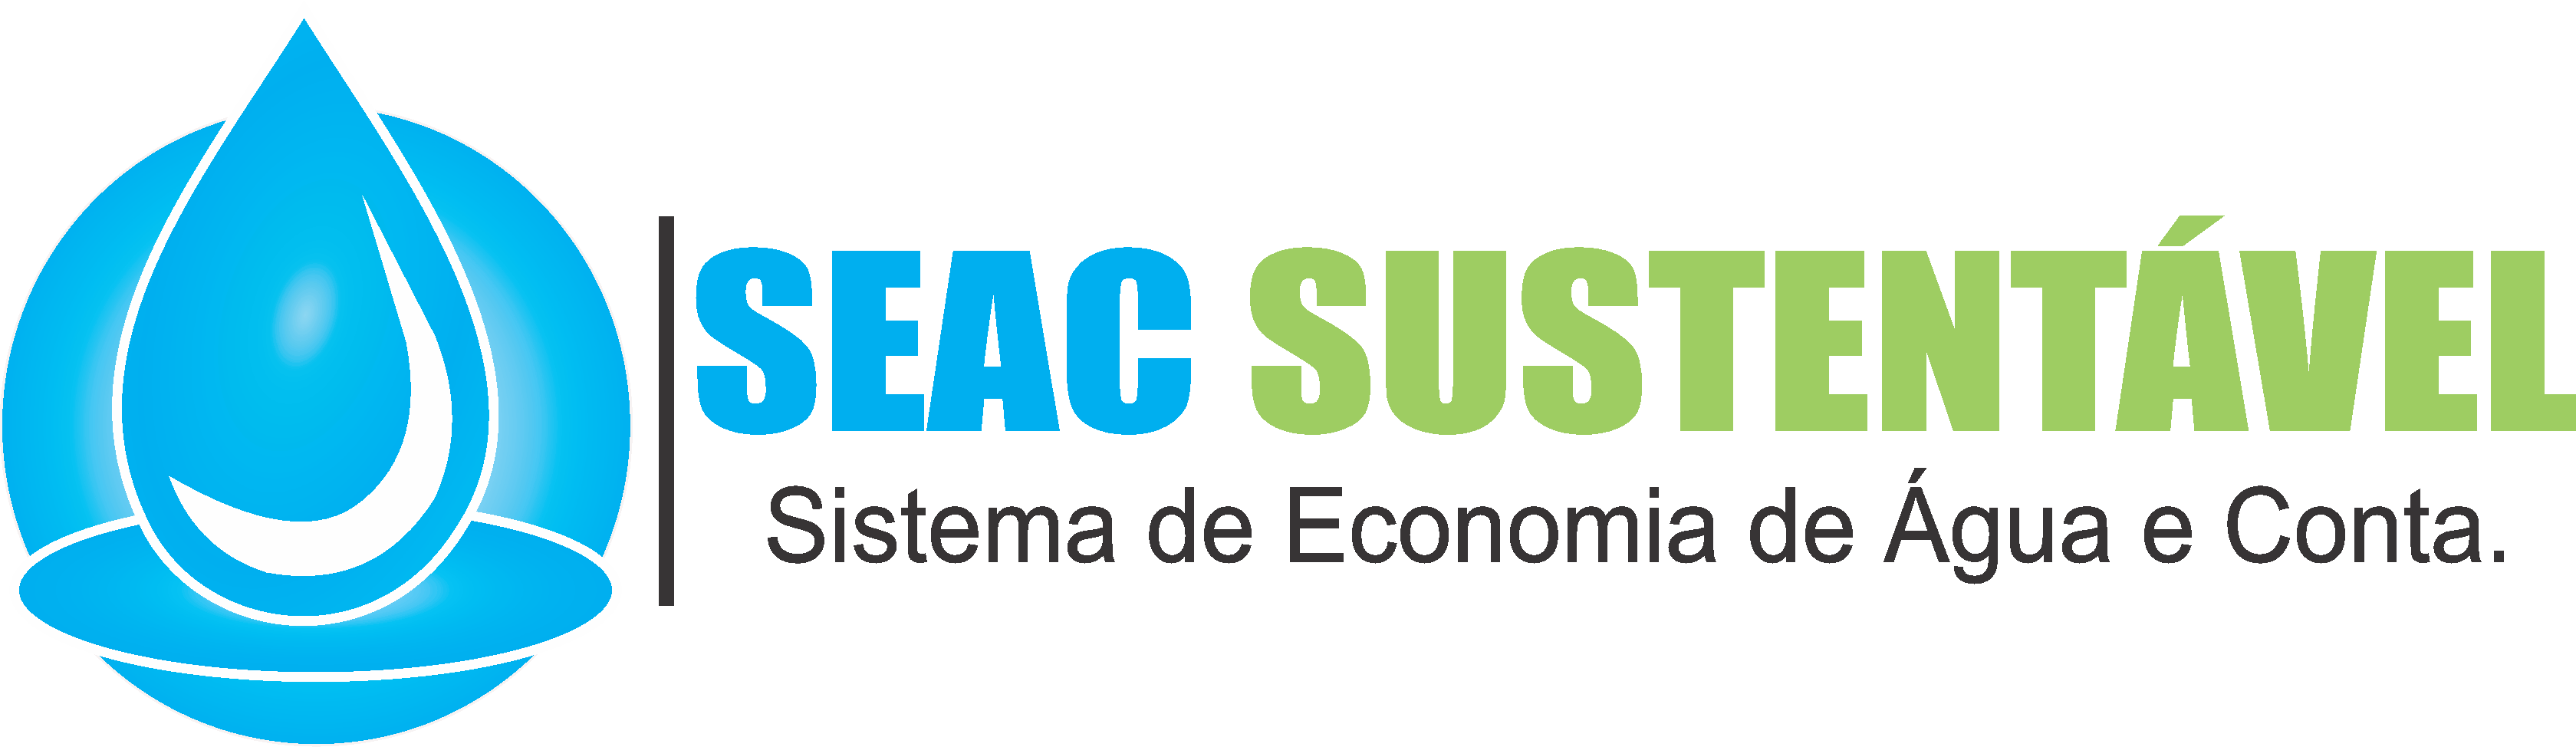 SEAC Sustentável